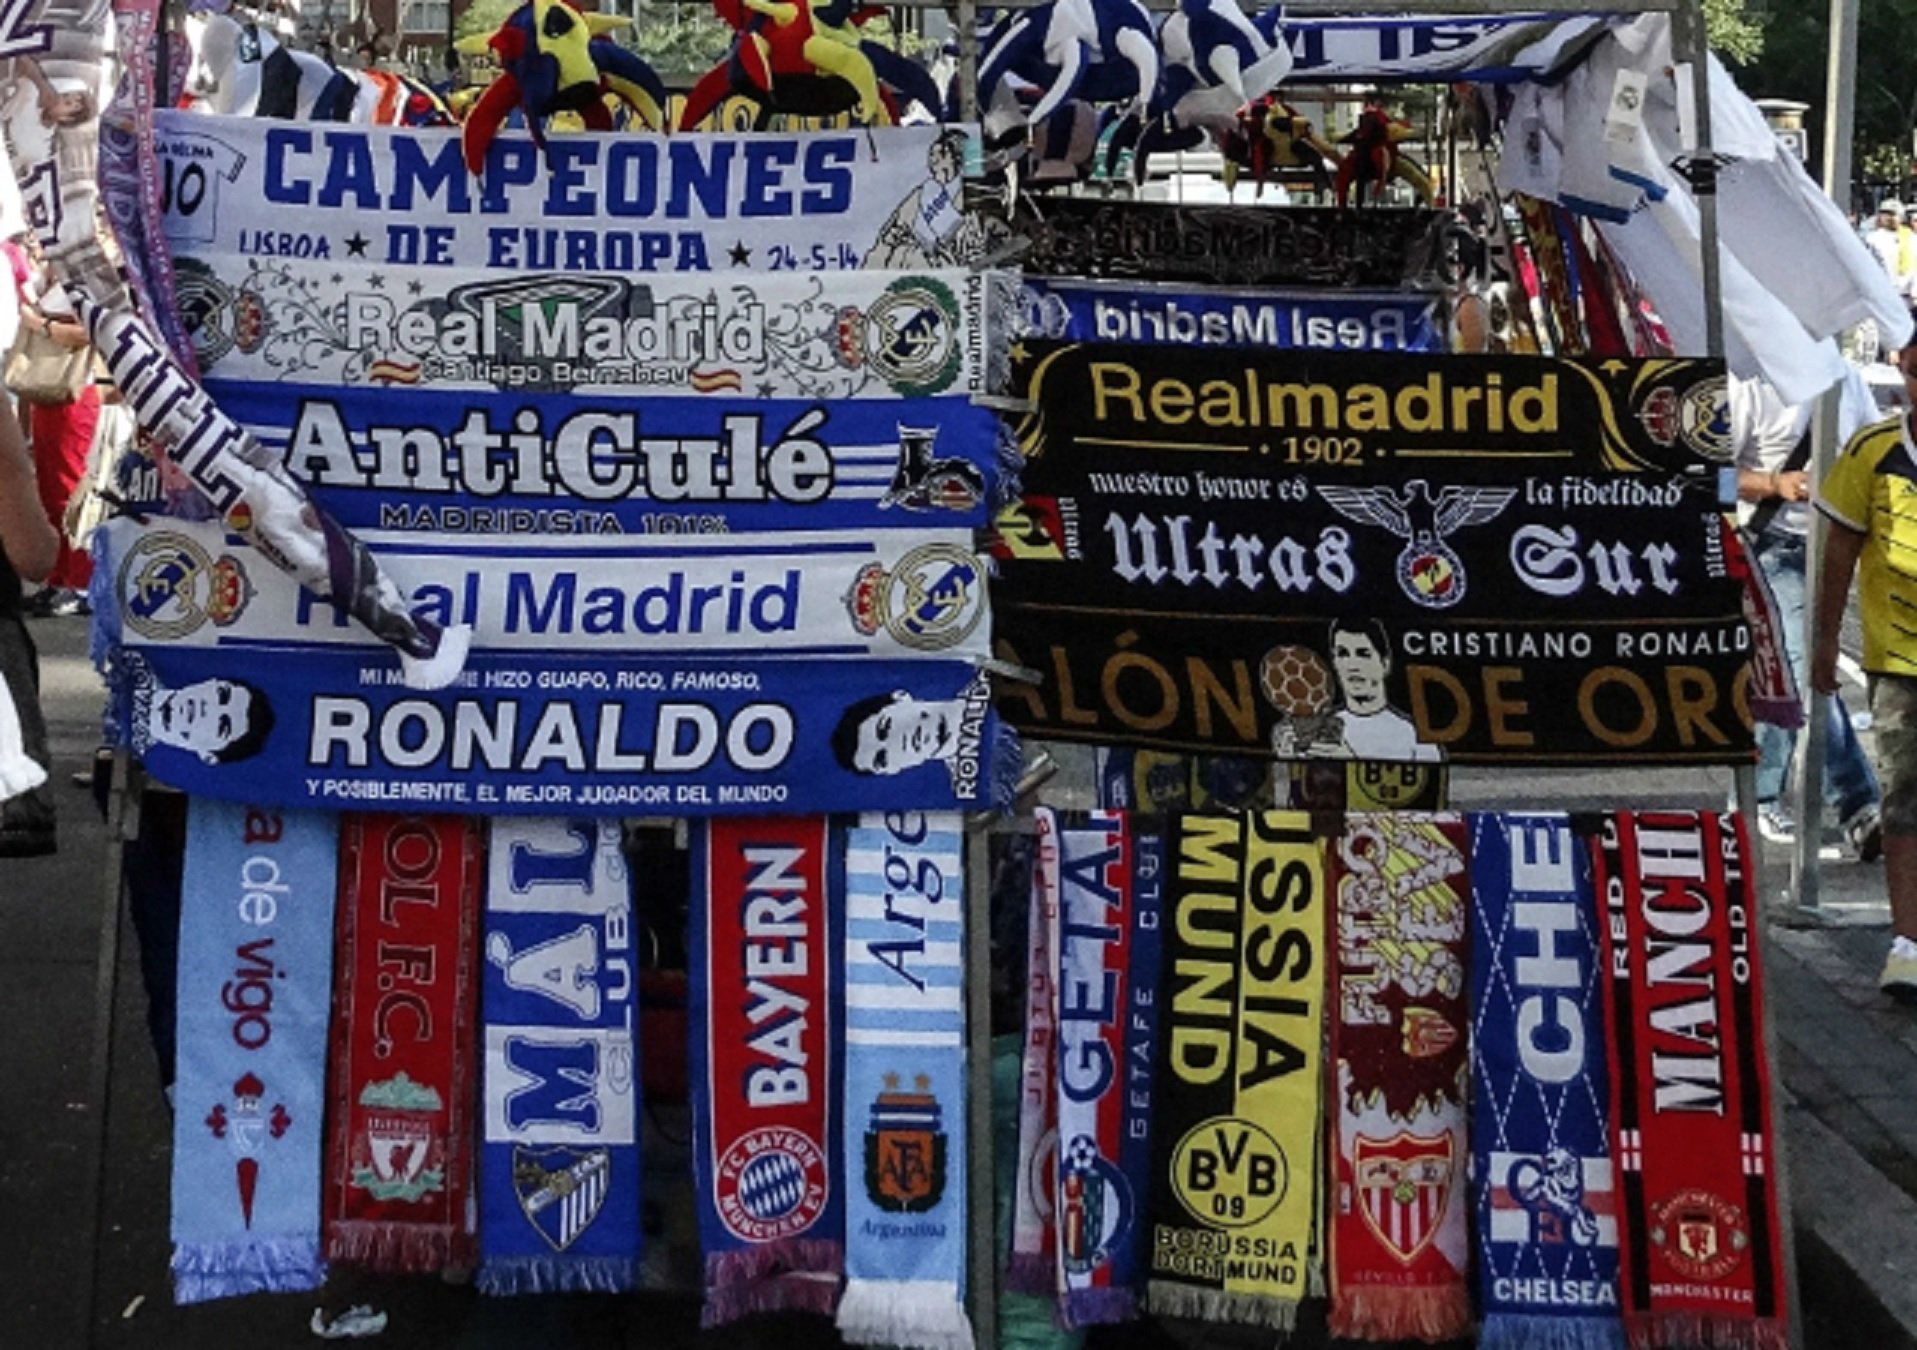 Periodista espanyol mostra una indignant imatge al Bernabéu amb una estelada